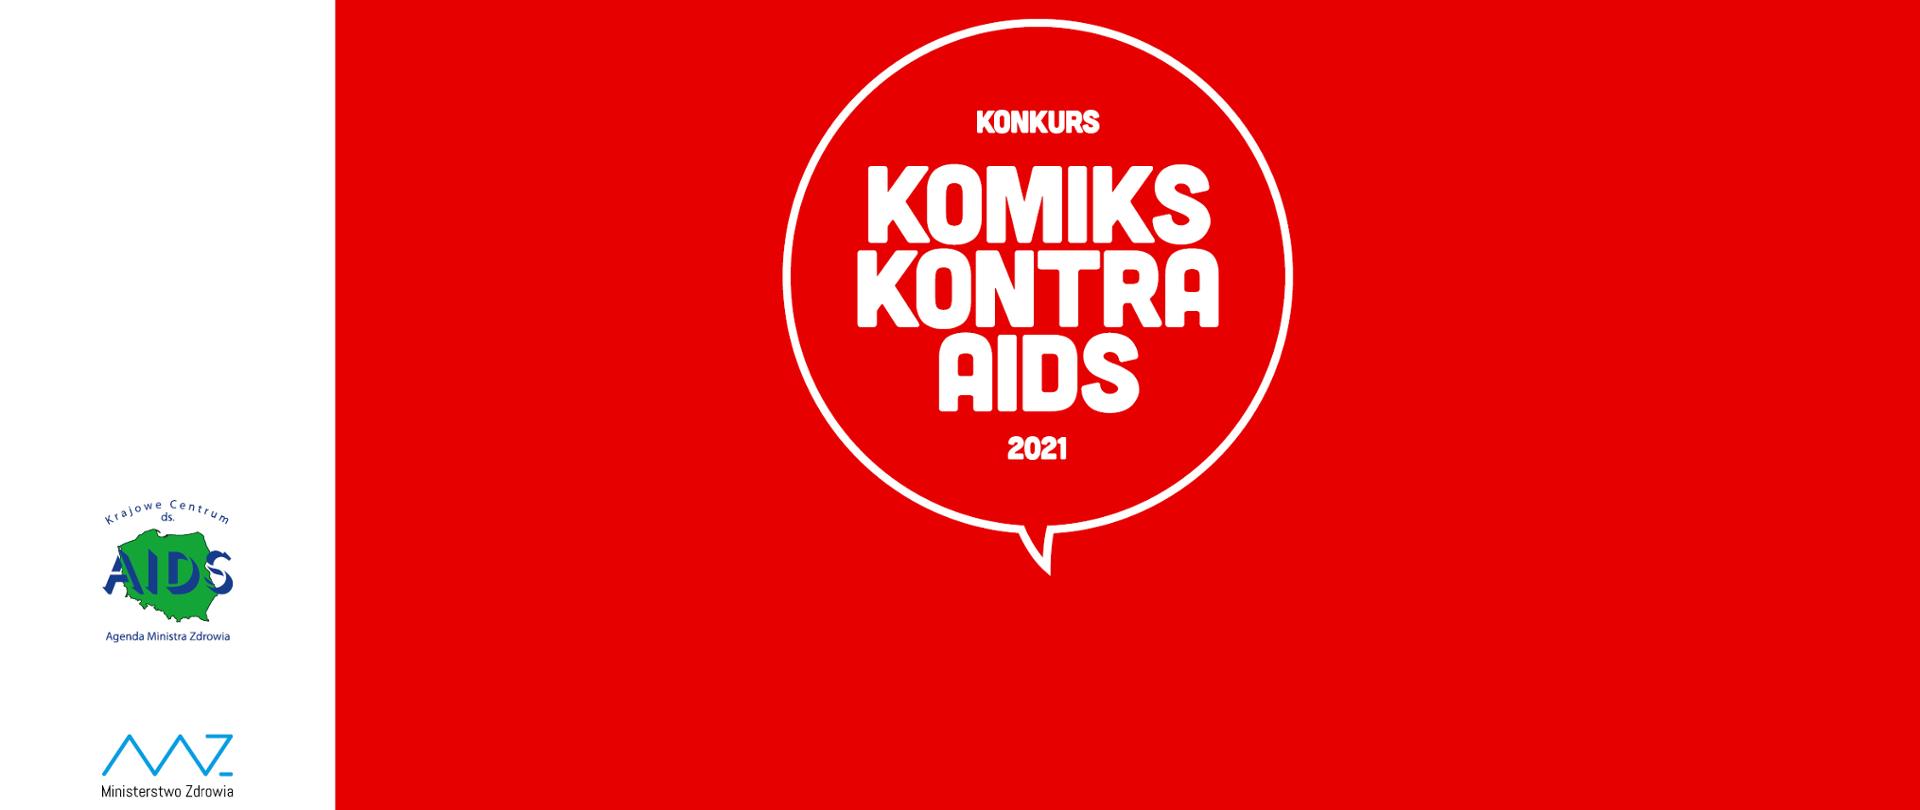 W dolnym lewym rogu widnieje logo Krajowego Centrum ds. AIDS i Ministerstwa Zdrowia. Na czerwonym tle w środku umieszczona biały napis "KONKURS KOMIKS KONTRA AIDS 2021.